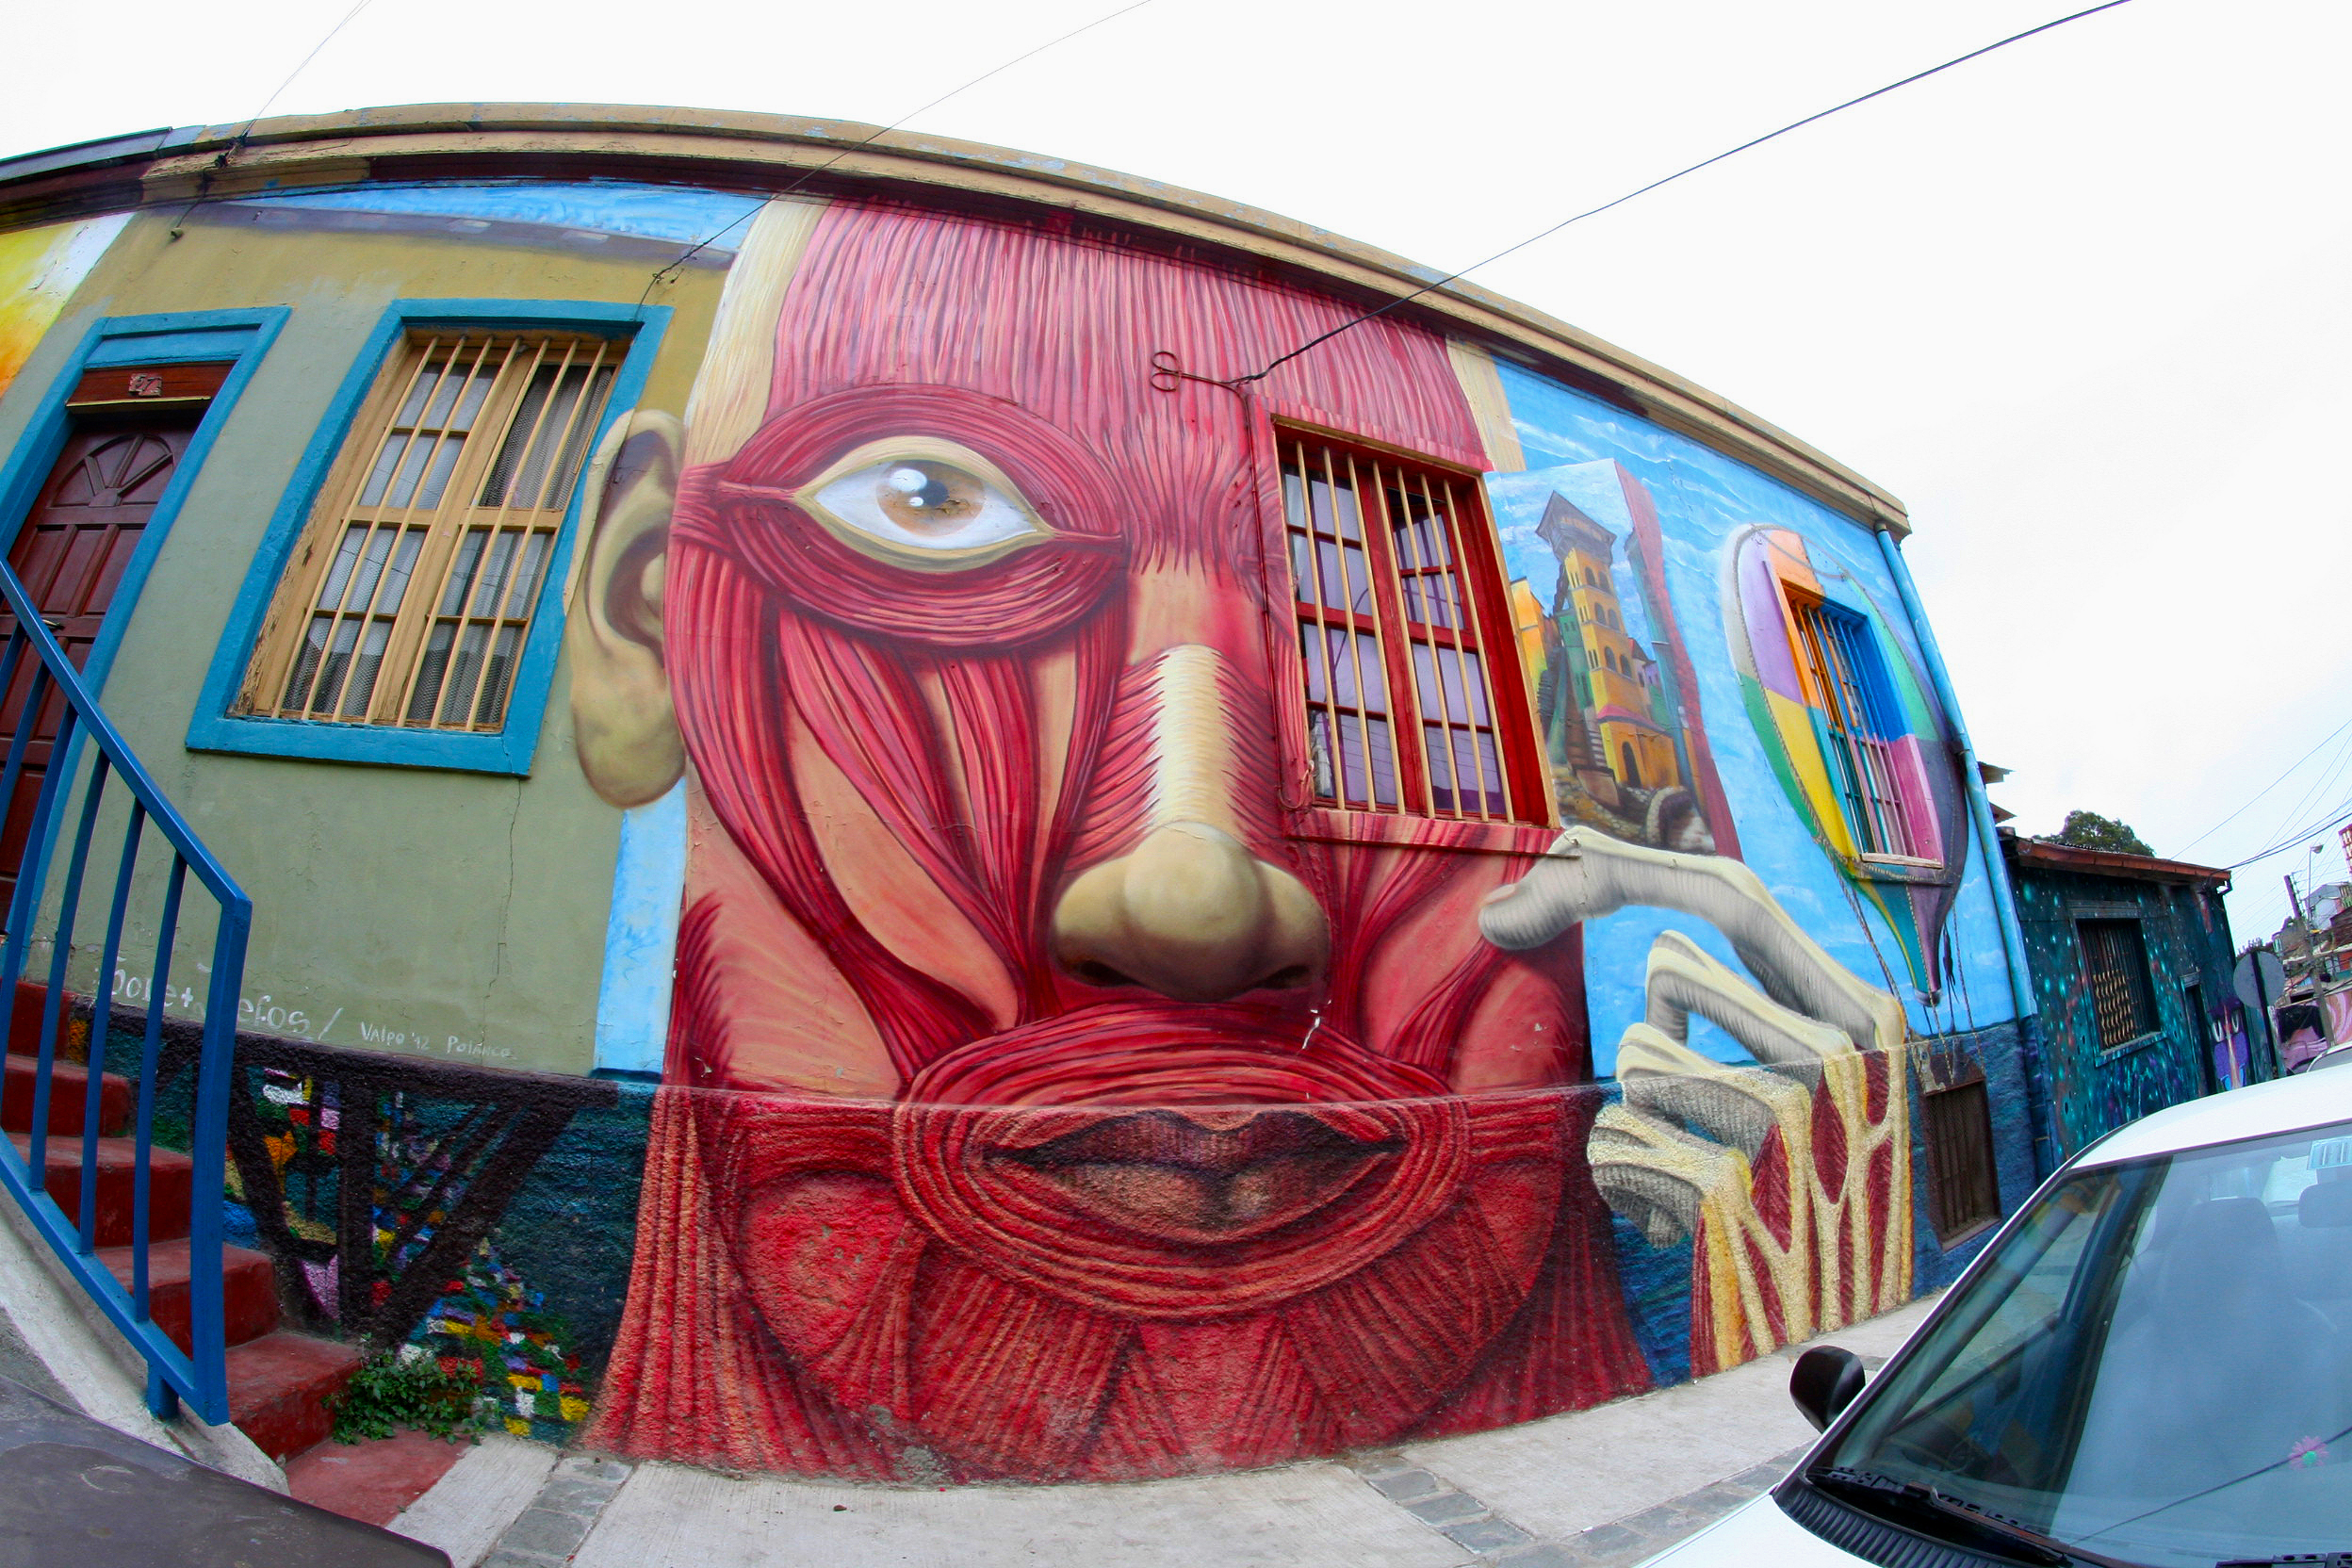 Valpo Art Street Art Tour, Valparaiso